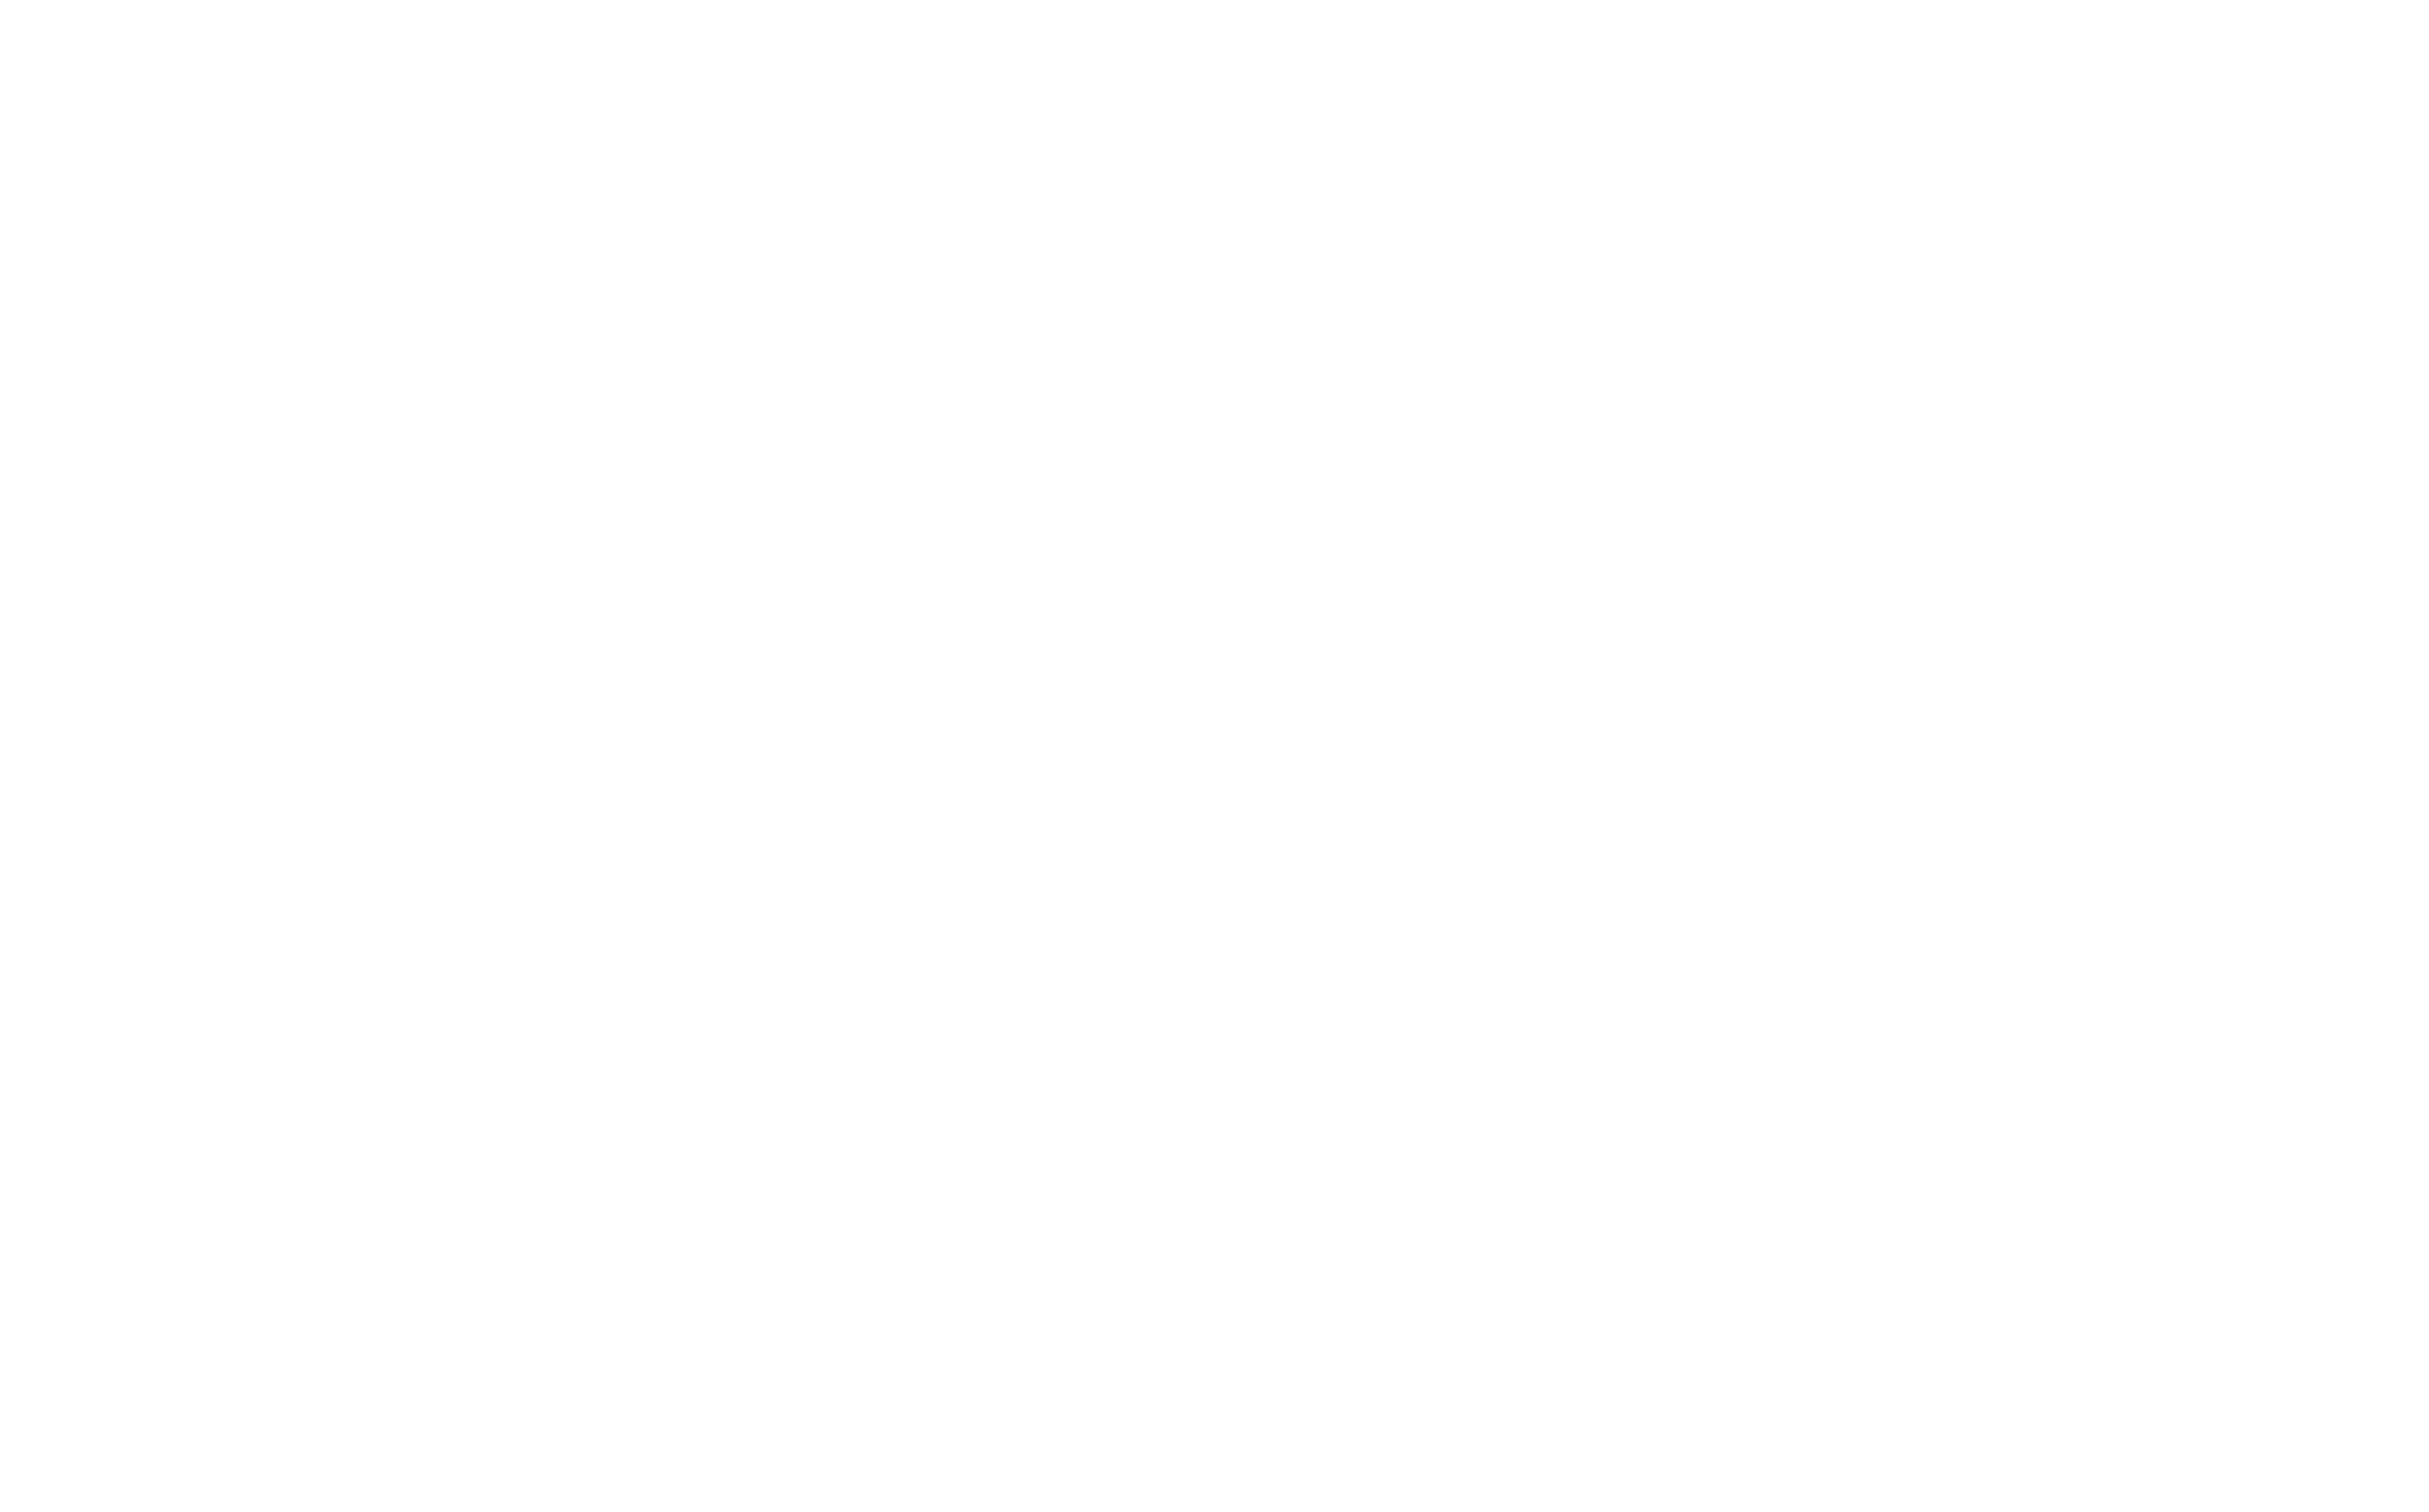 Spectrum Recordings